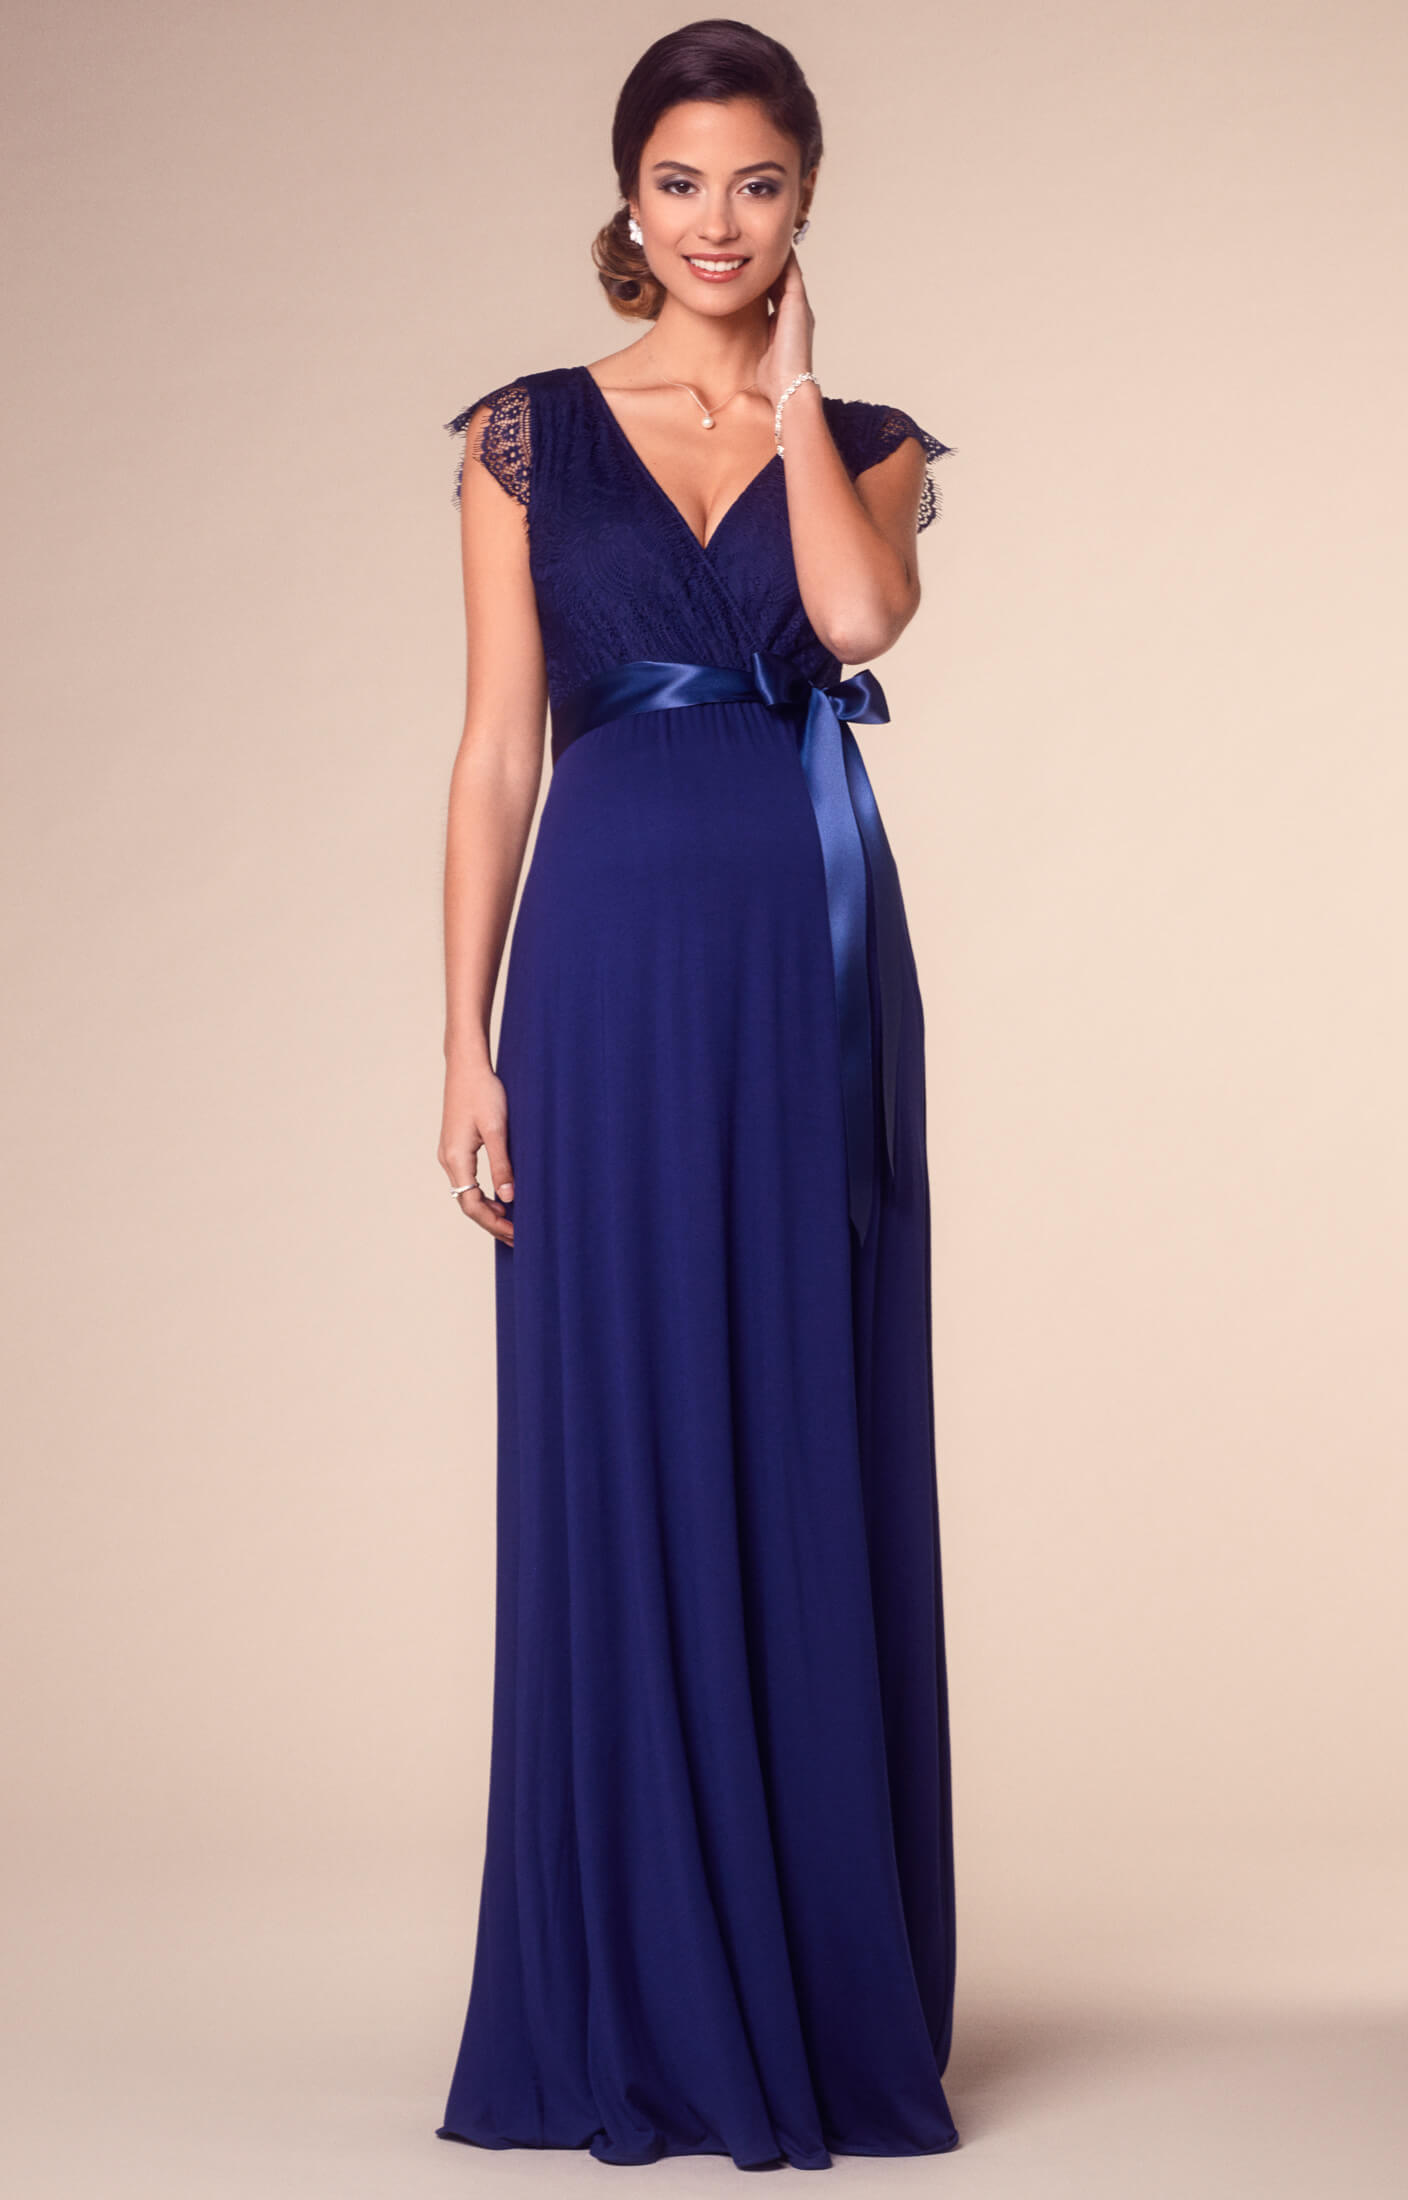 Umstandskleid Rosa lang in Indigo Blau - Umstandshochzeitskleider,  Abendgarderobe und Partykleidung by Tiffany Rose DE